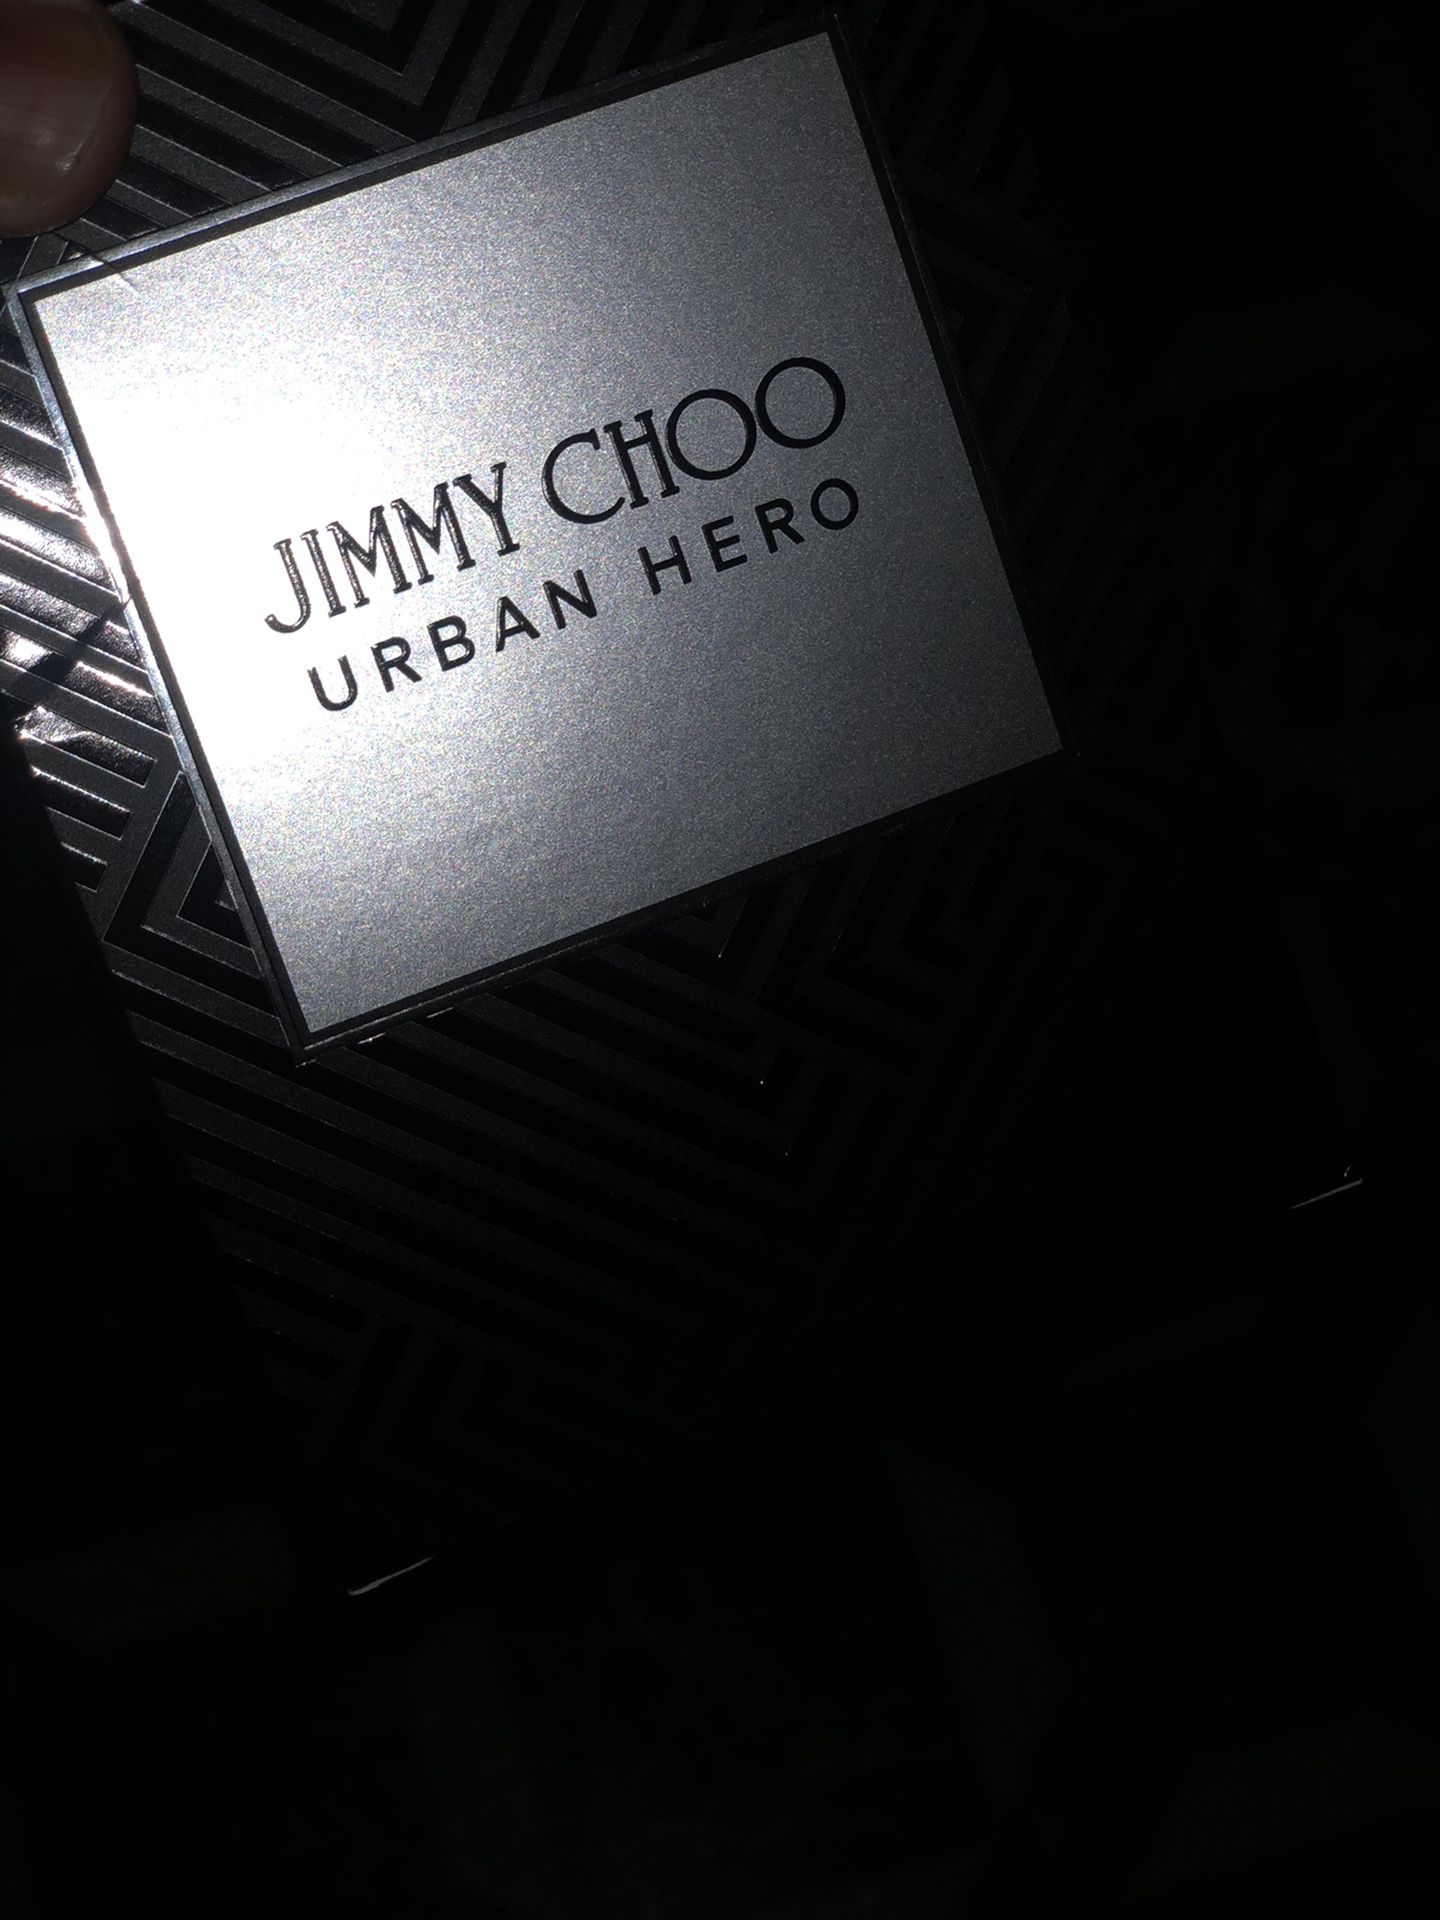 Jimmy Choo Urban Hero 100ml